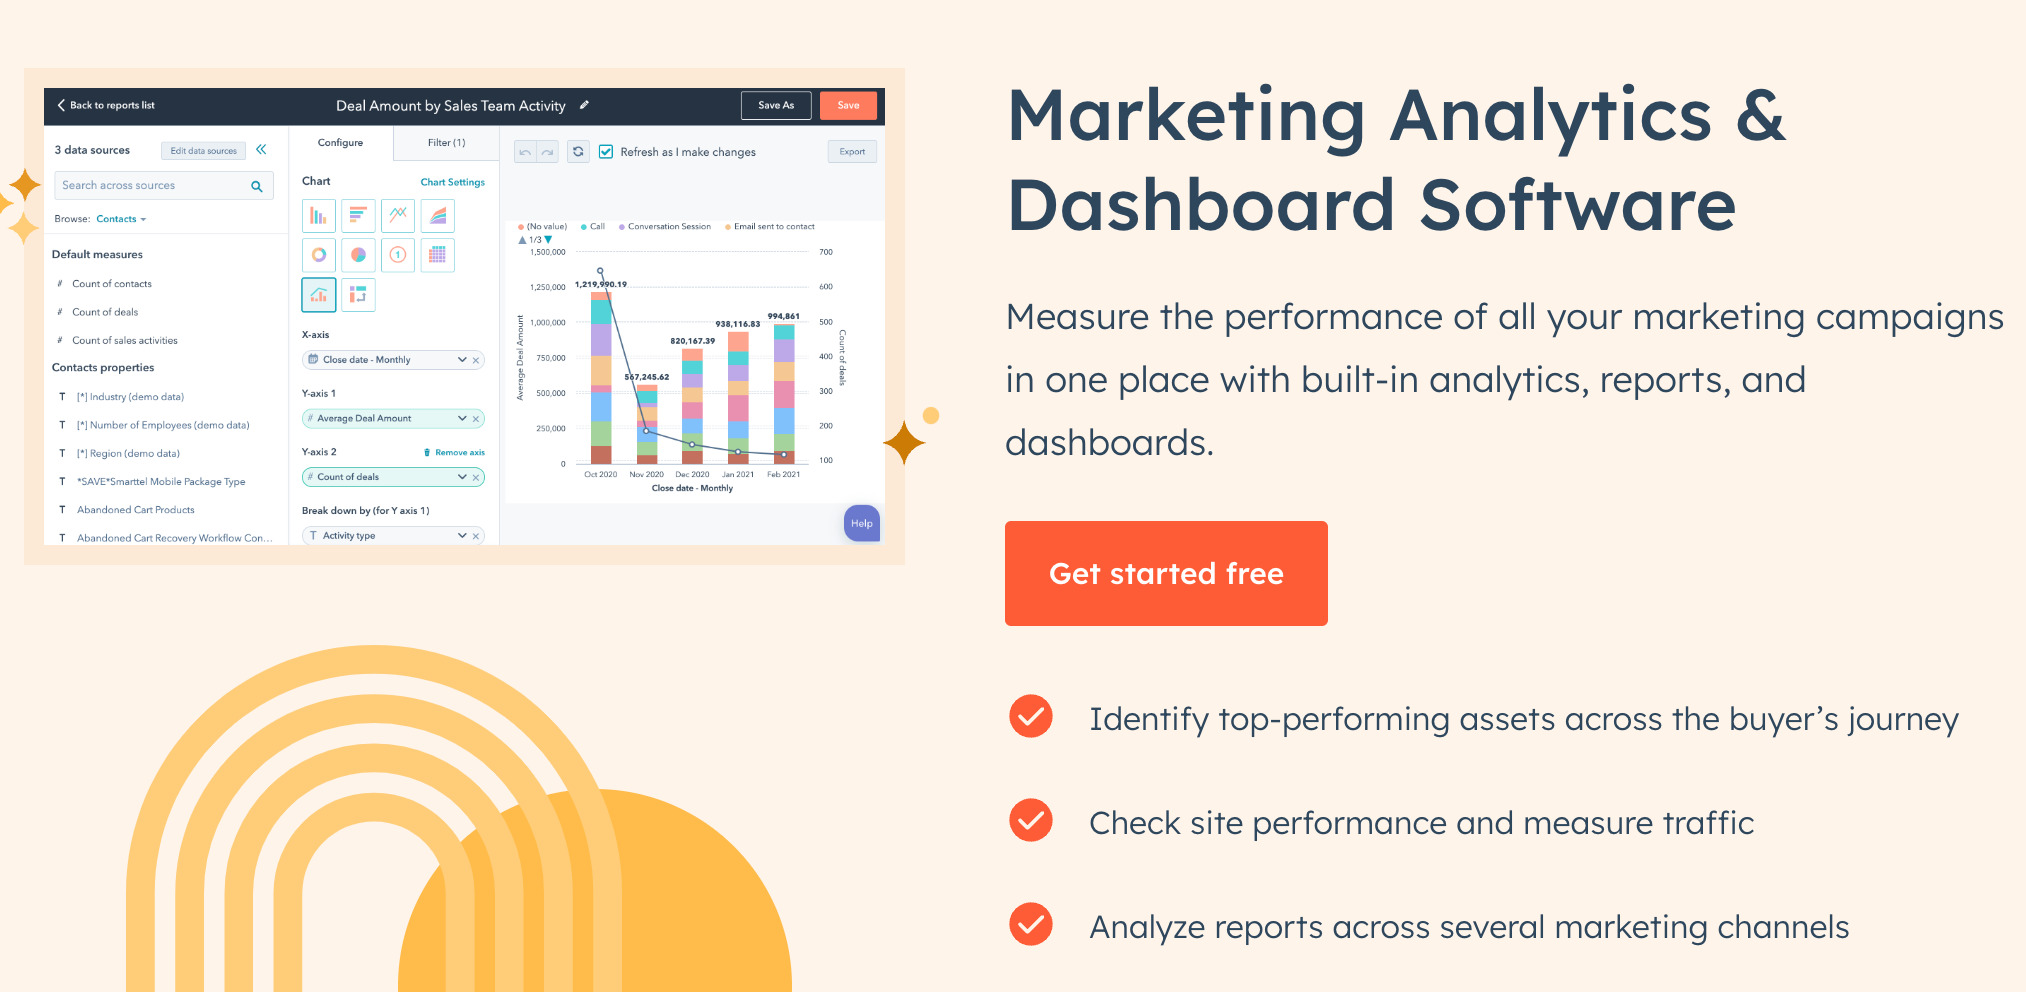 HubSpot's Marketing Analytics & Dashboard Software